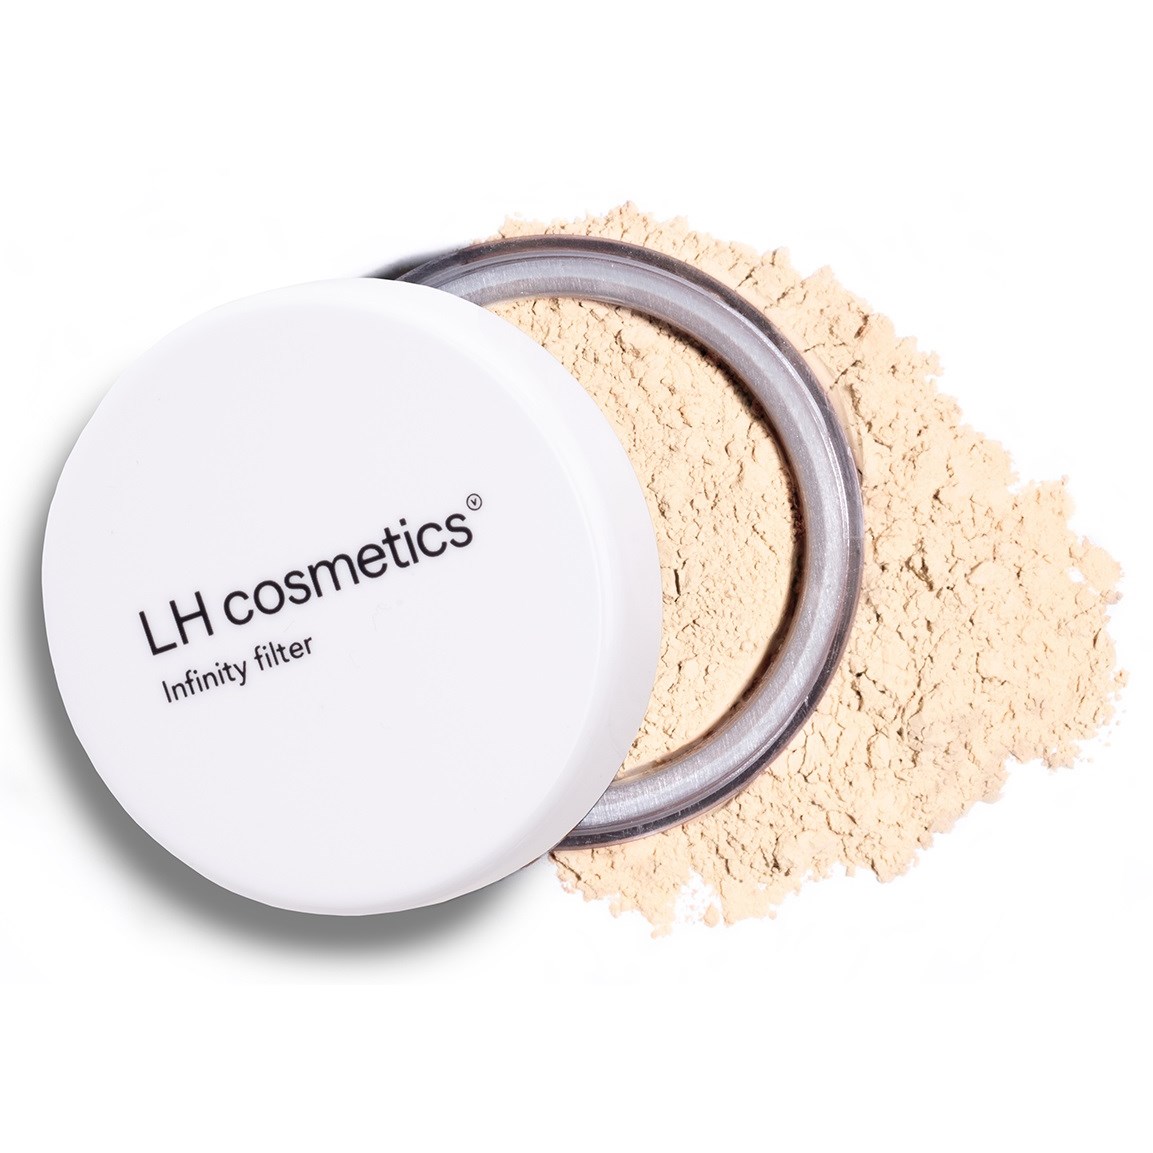 Läs mer om LH cosmetics Infinity Filter